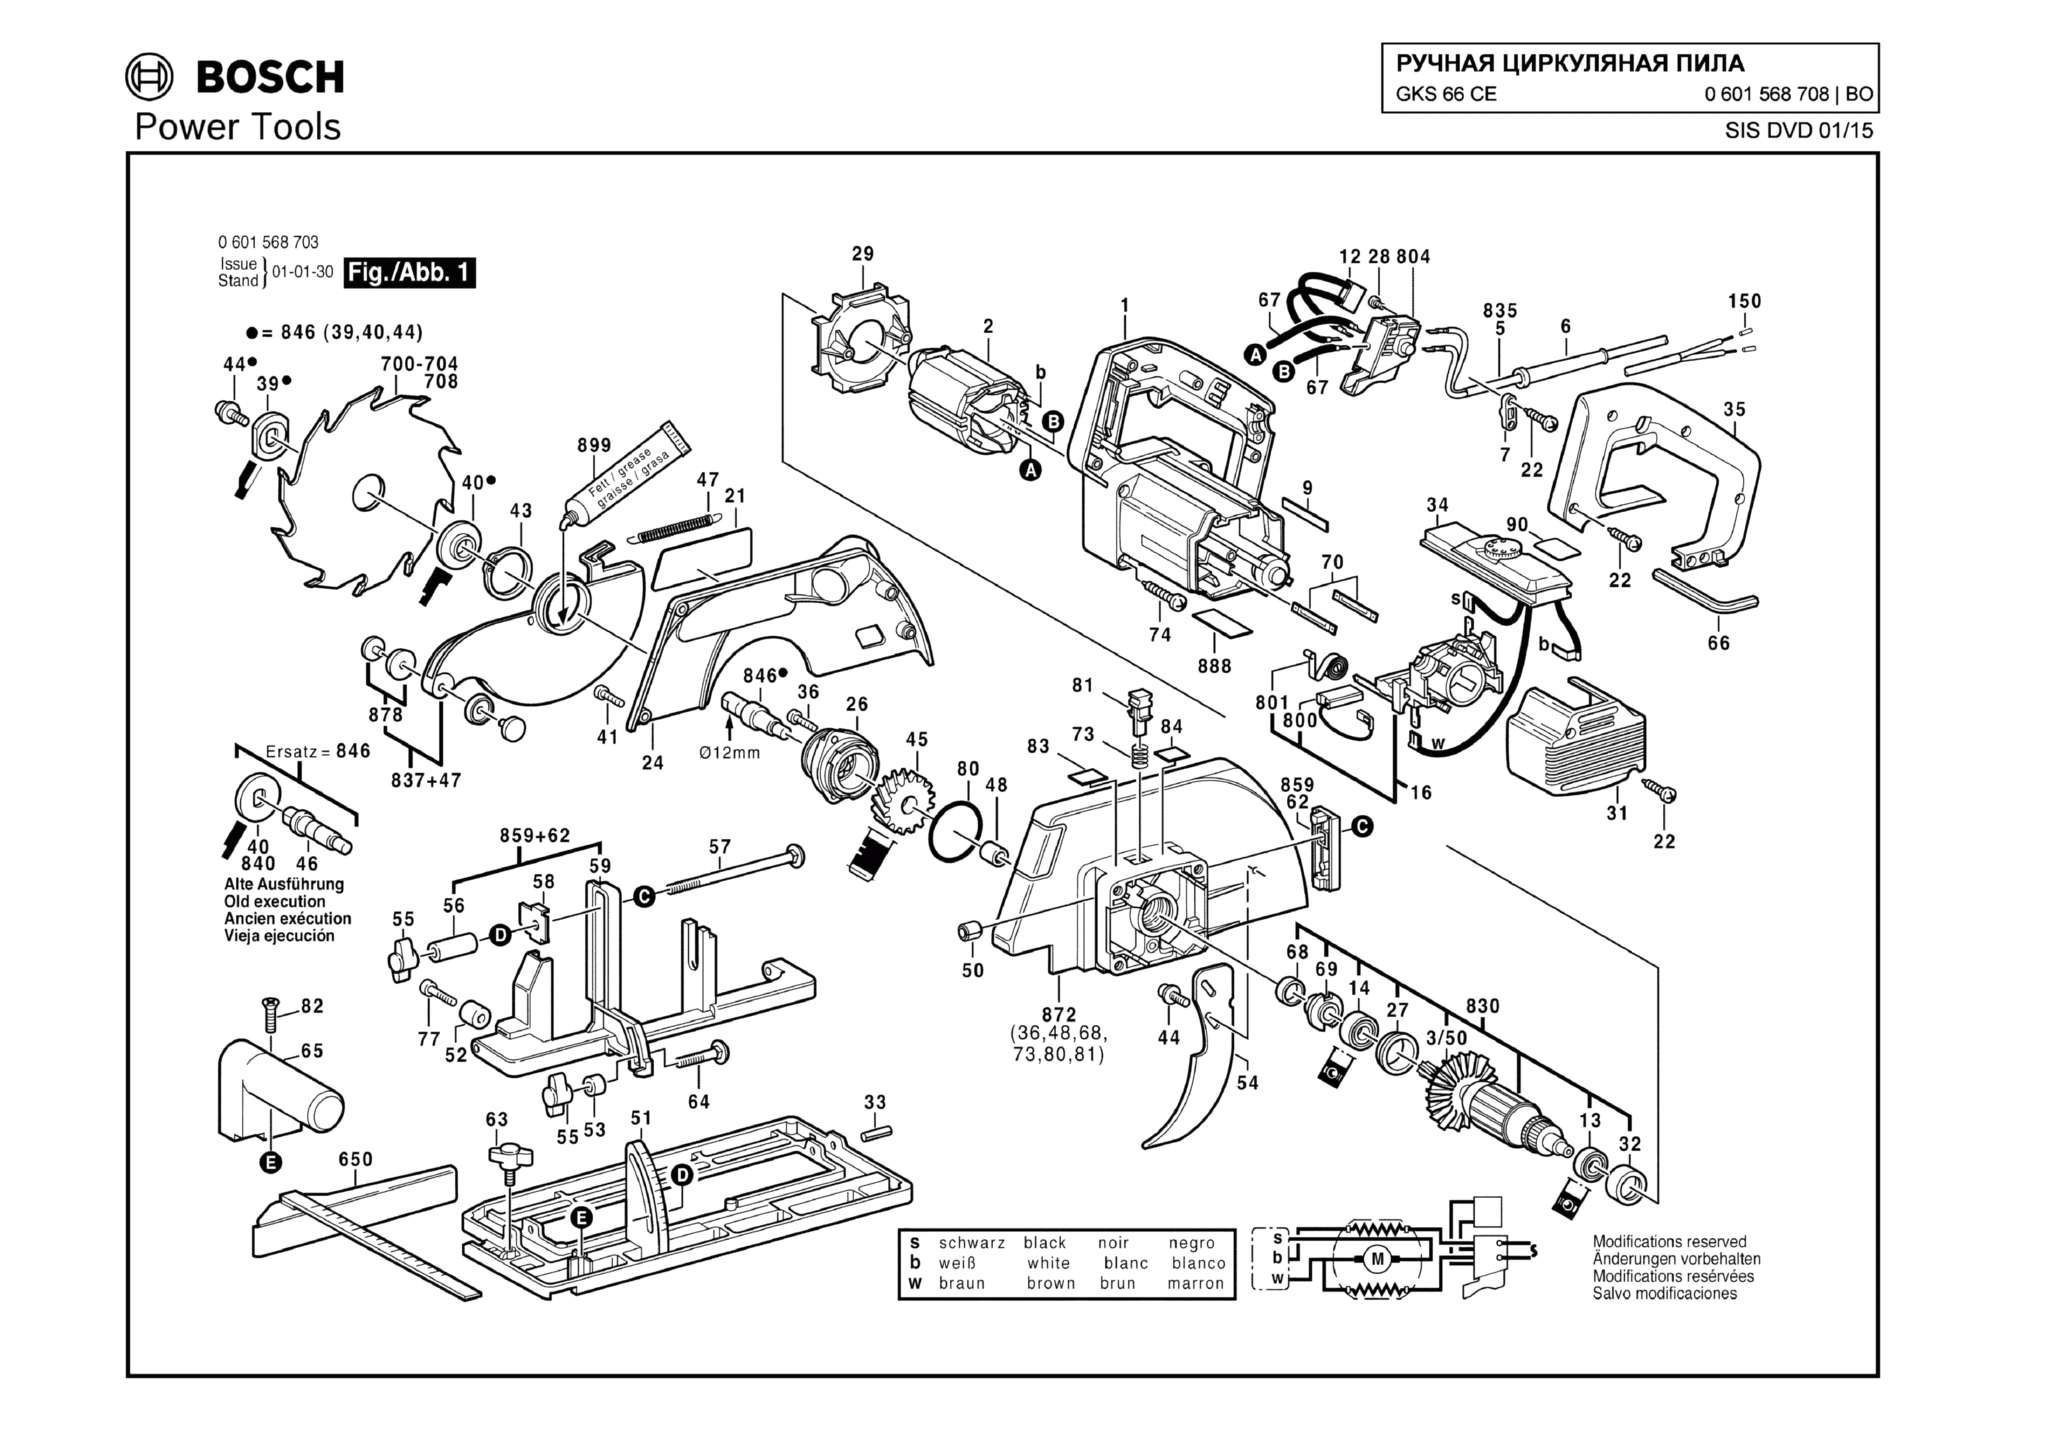 Запчасти, схема и деталировка Bosch GKS 66 CE (ТИП 0601568708)